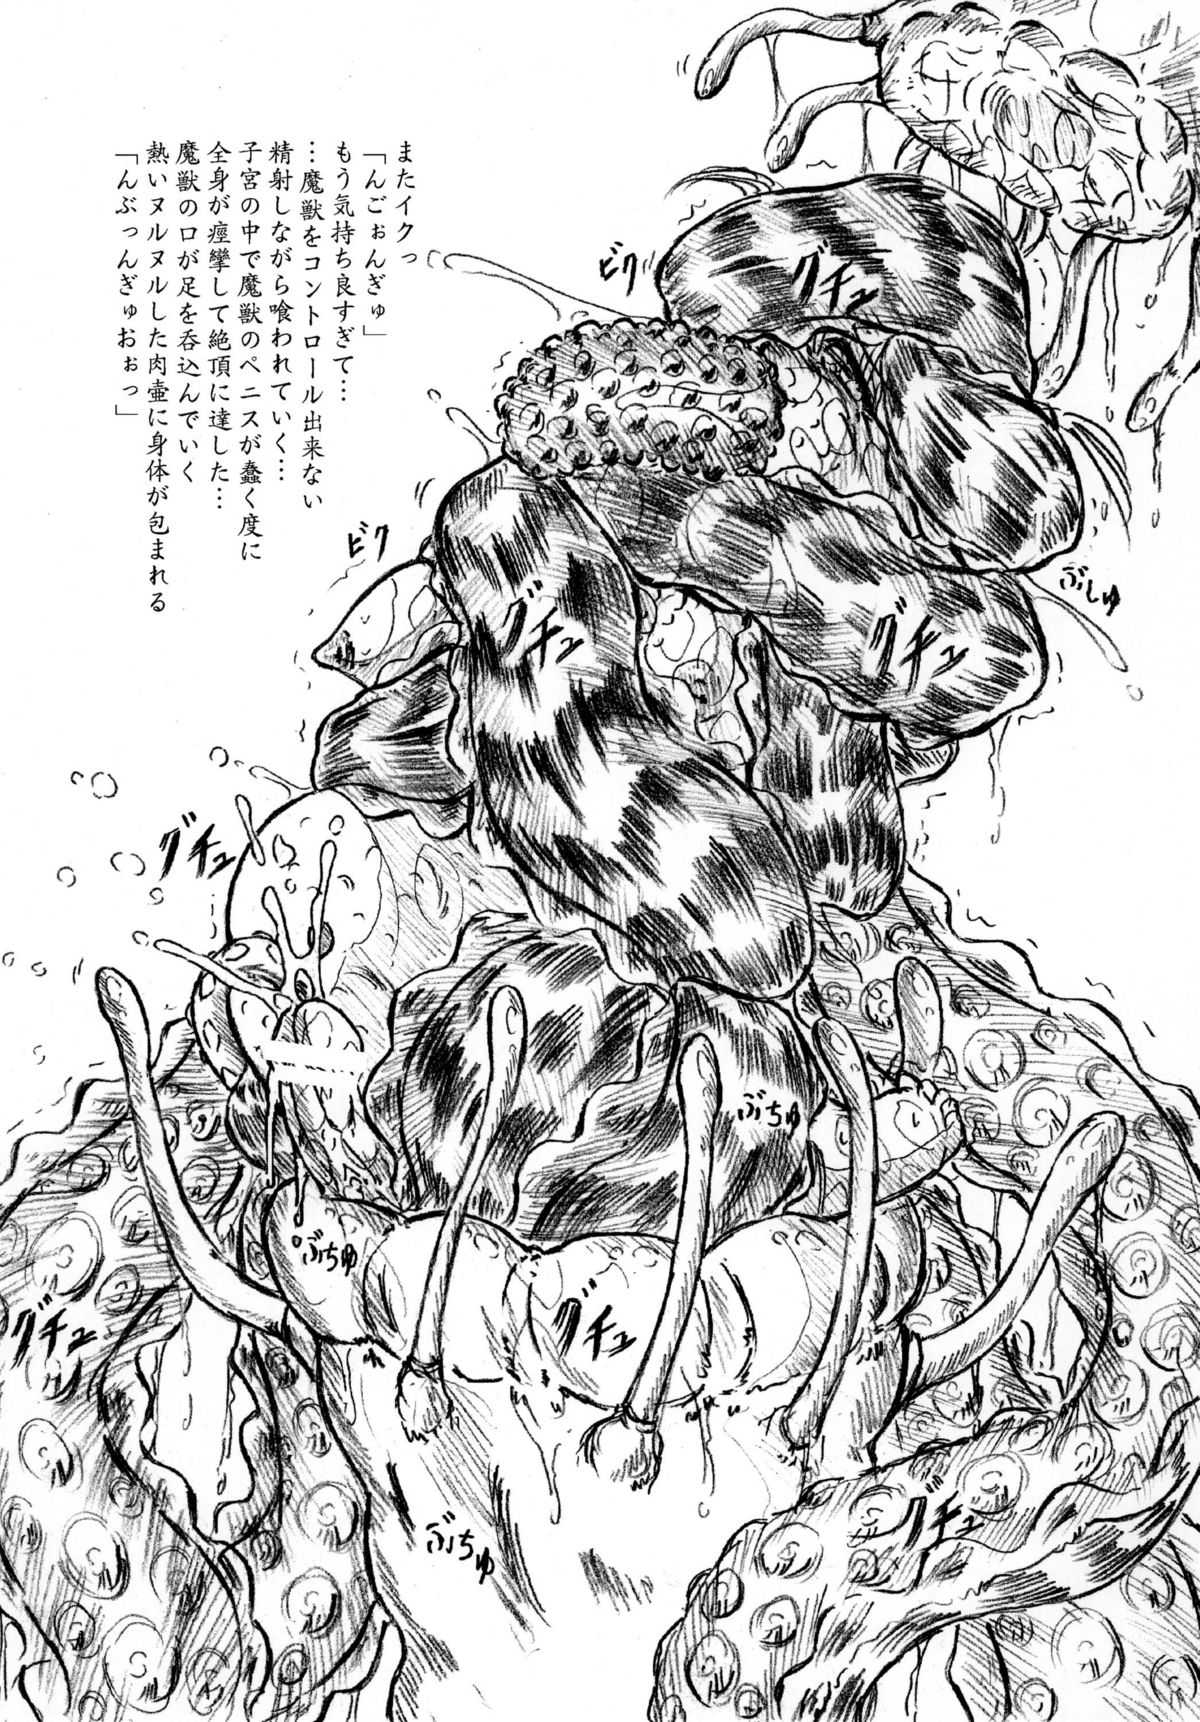 [Sumomo Dou] Bibi Anbetsu 35 (2010-06-01) (同人誌) [すもも堂] 『拘束ふたなり娘』『召喚獣』『生贄』ふたなりバージョン [RJ062644] (JPG化済)